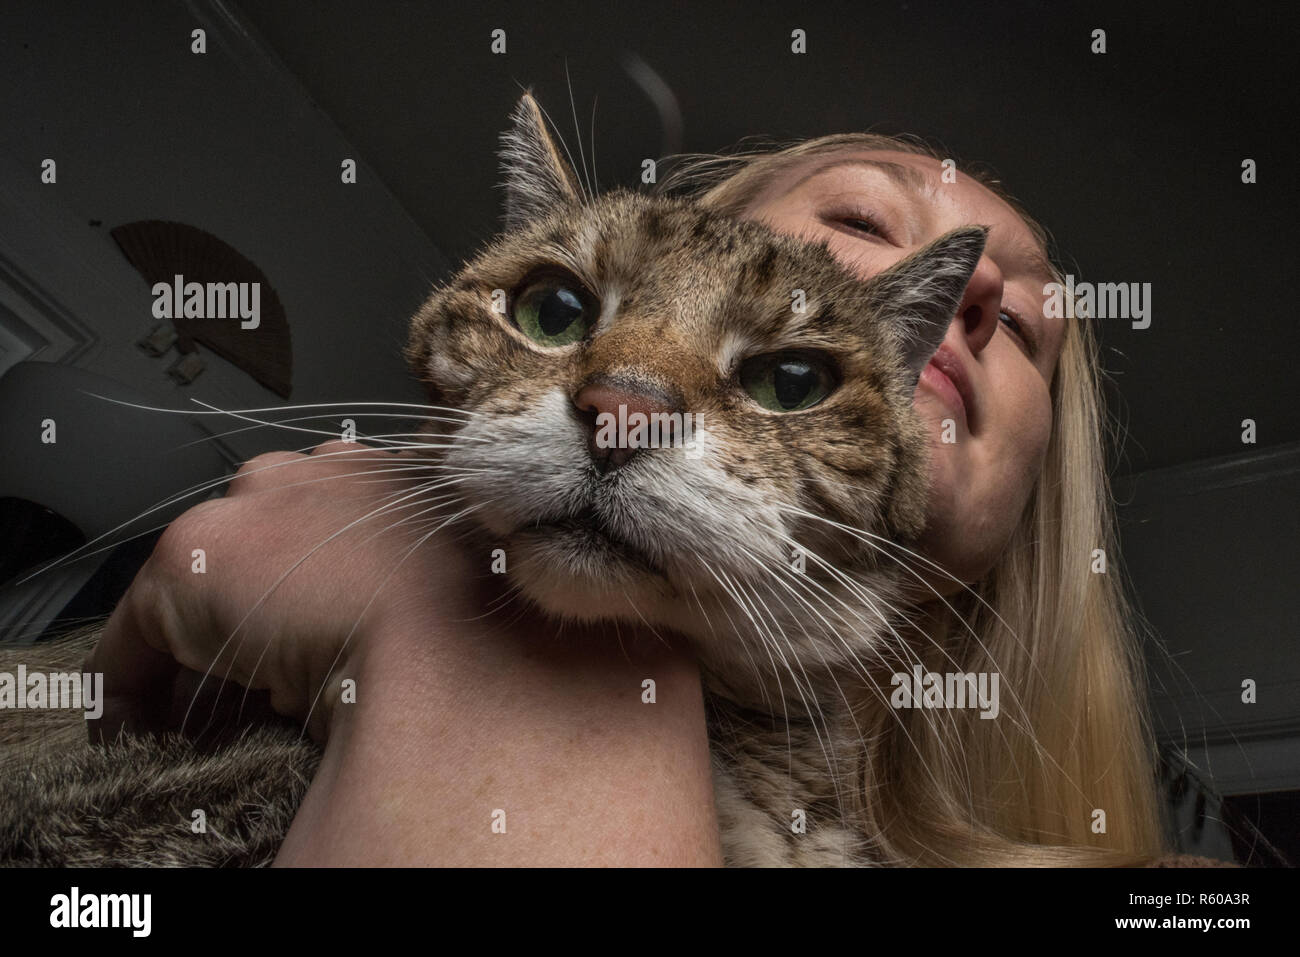 Ein Patient Katze stellt mit seinem Besitzer Obsession mit es als Eigentümer hält und drückt es. Die Katze schaut genervt. Stockfoto